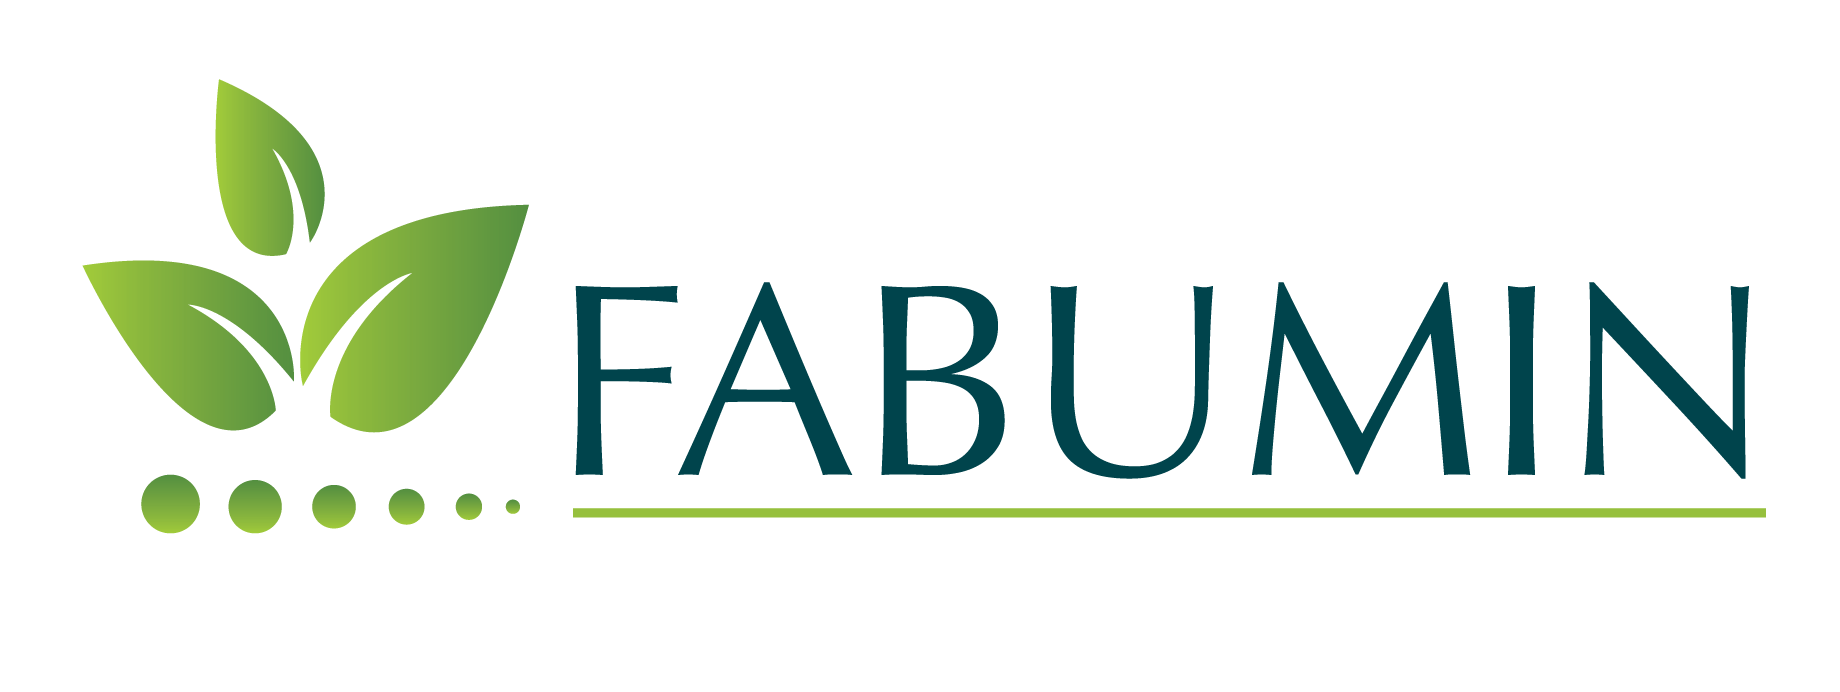 Fabumin logo